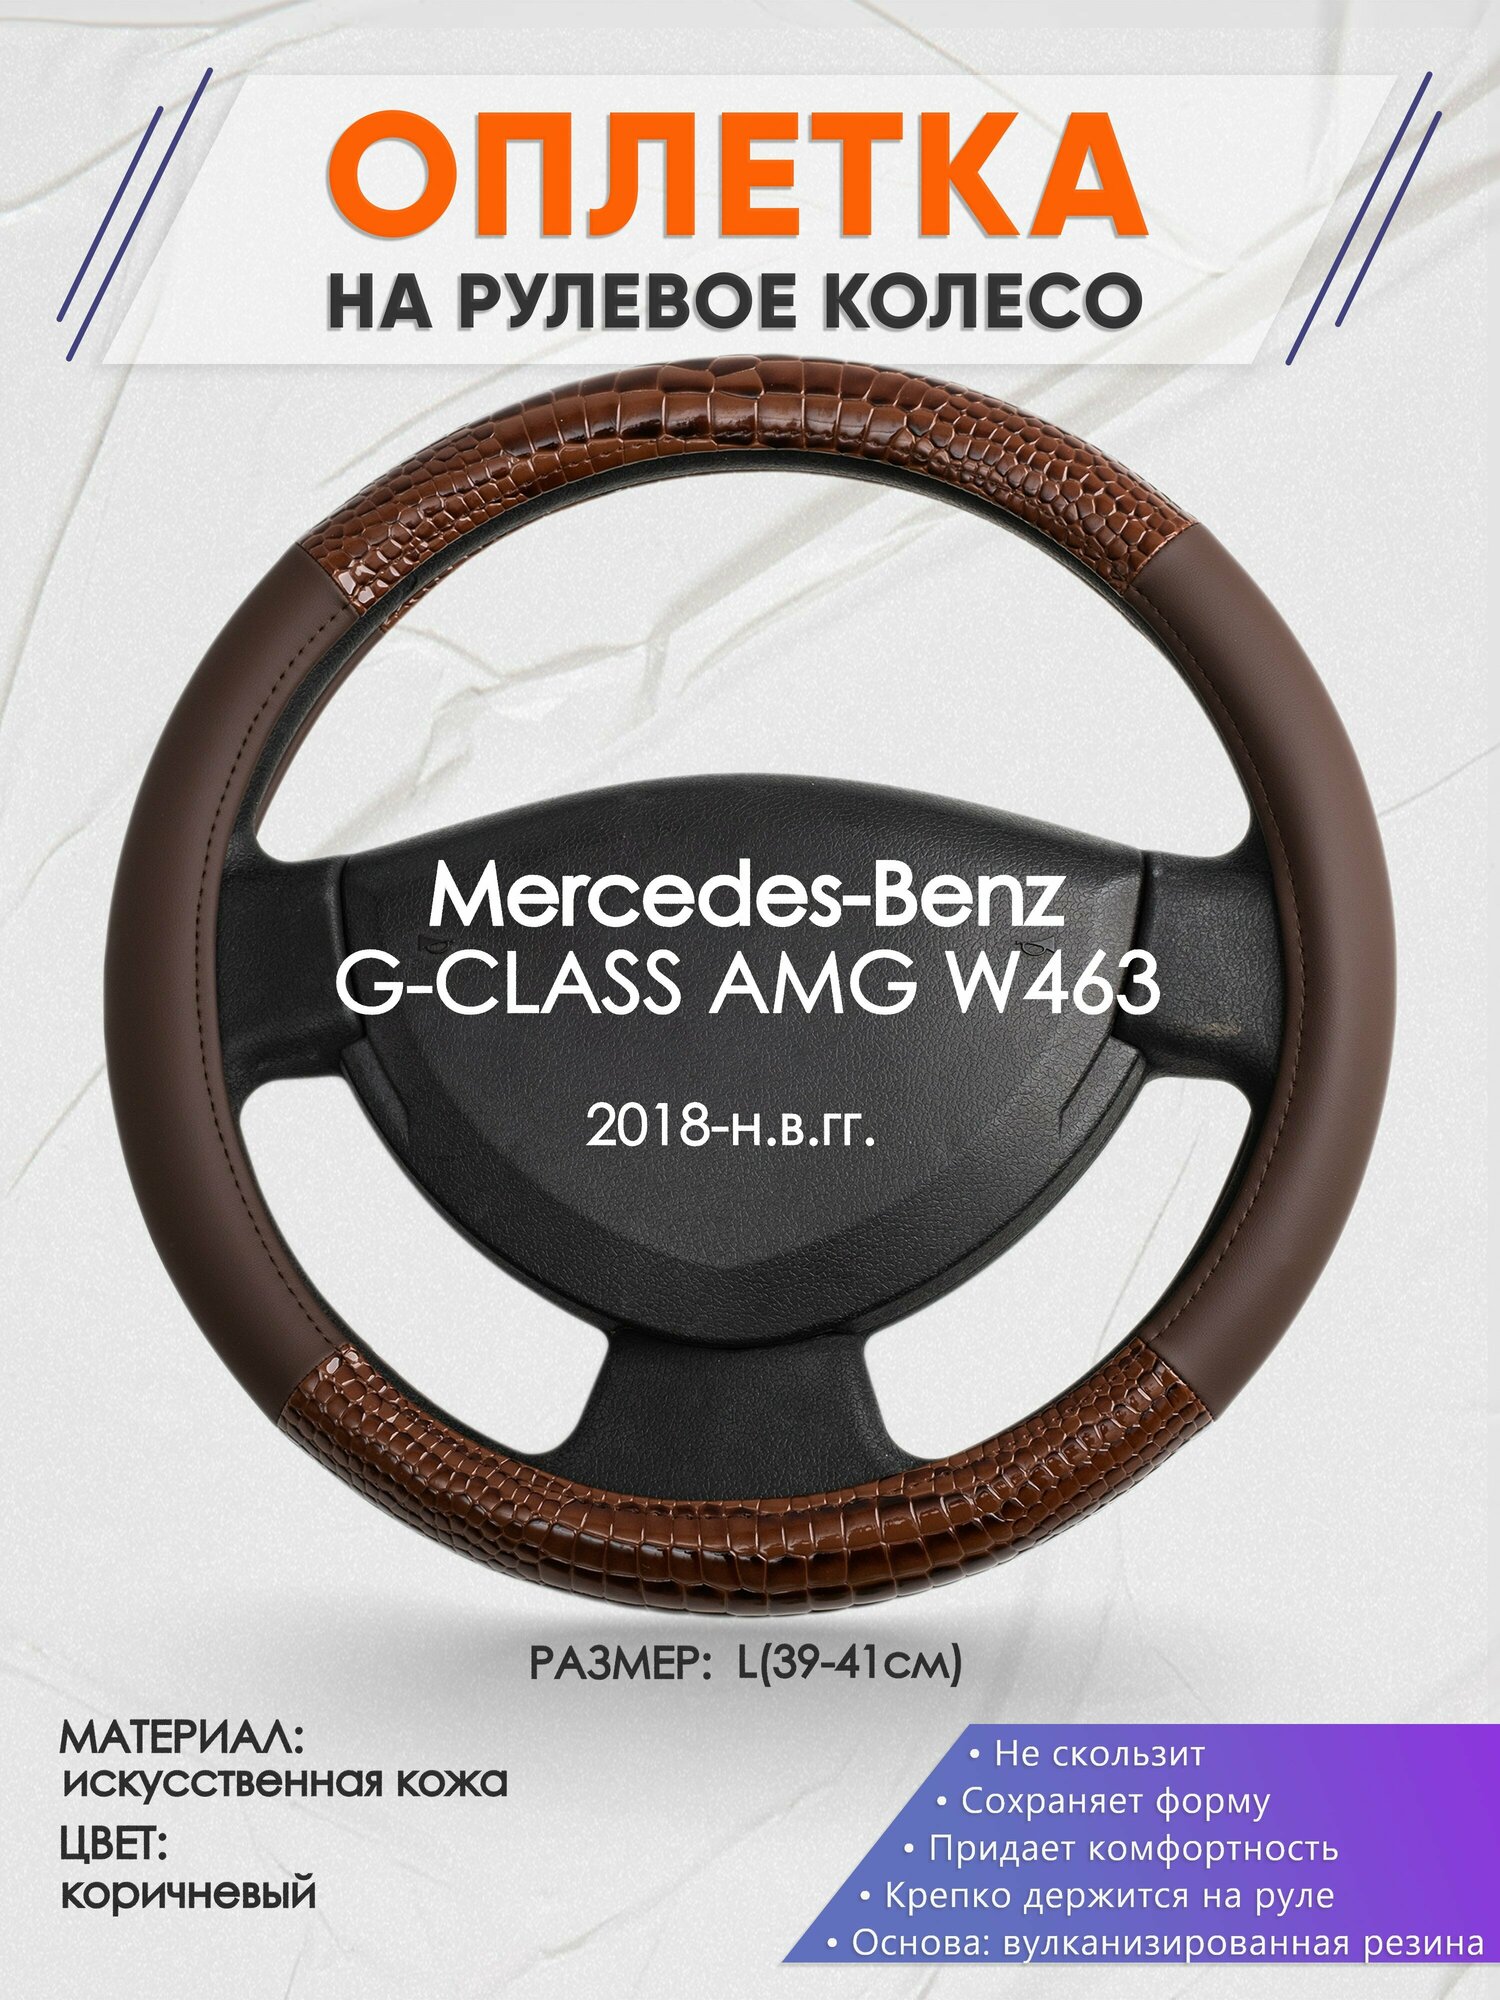 Оплетка на руль для Mercedes-Benz G-CLASS AMG W463(Мерседес Бенц Г Класс) 2018-н. в, L(39-41см), Искусственная кожа 85